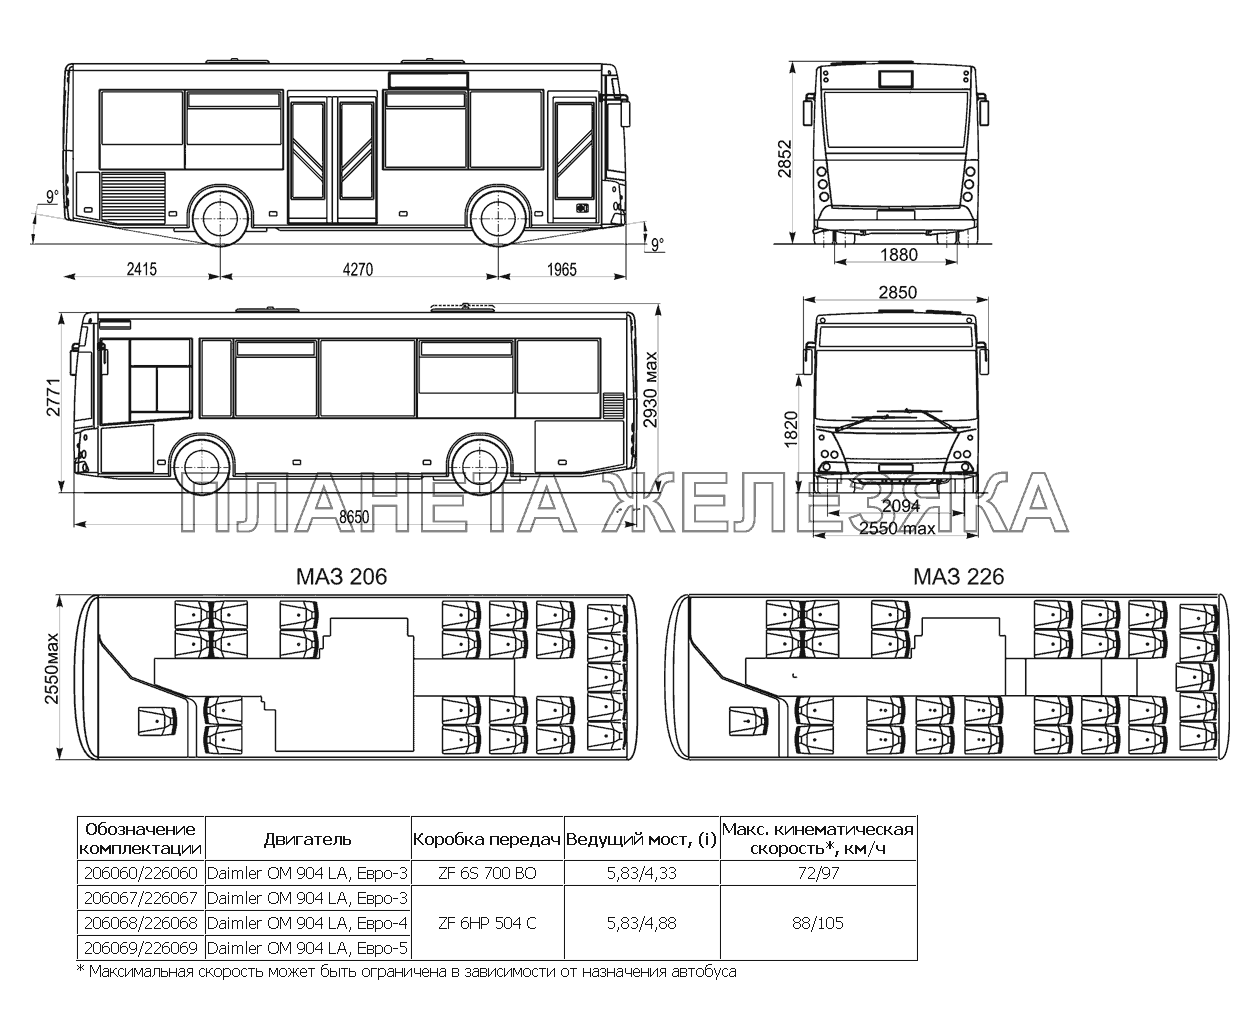 Основные размеры, планировка и комплектации автобусов МАЗ 206, МАЗ 226 МАЗ-206/226